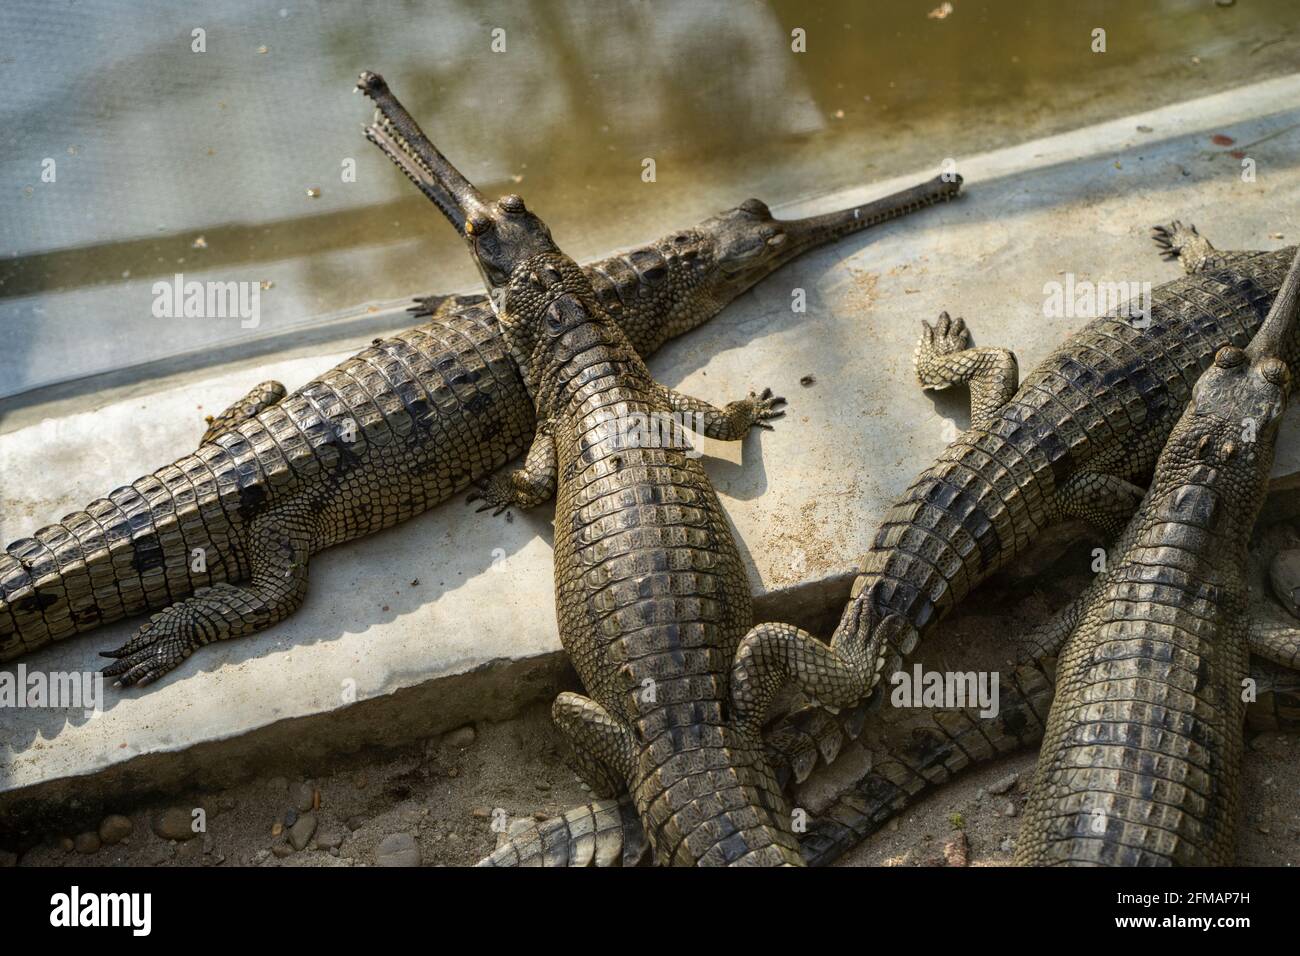 Écloserie de Gharial / Gavial (crocodile), parc national de Chitwan, district de Chitwan, province de Bagmati, Népal Banque D'Images